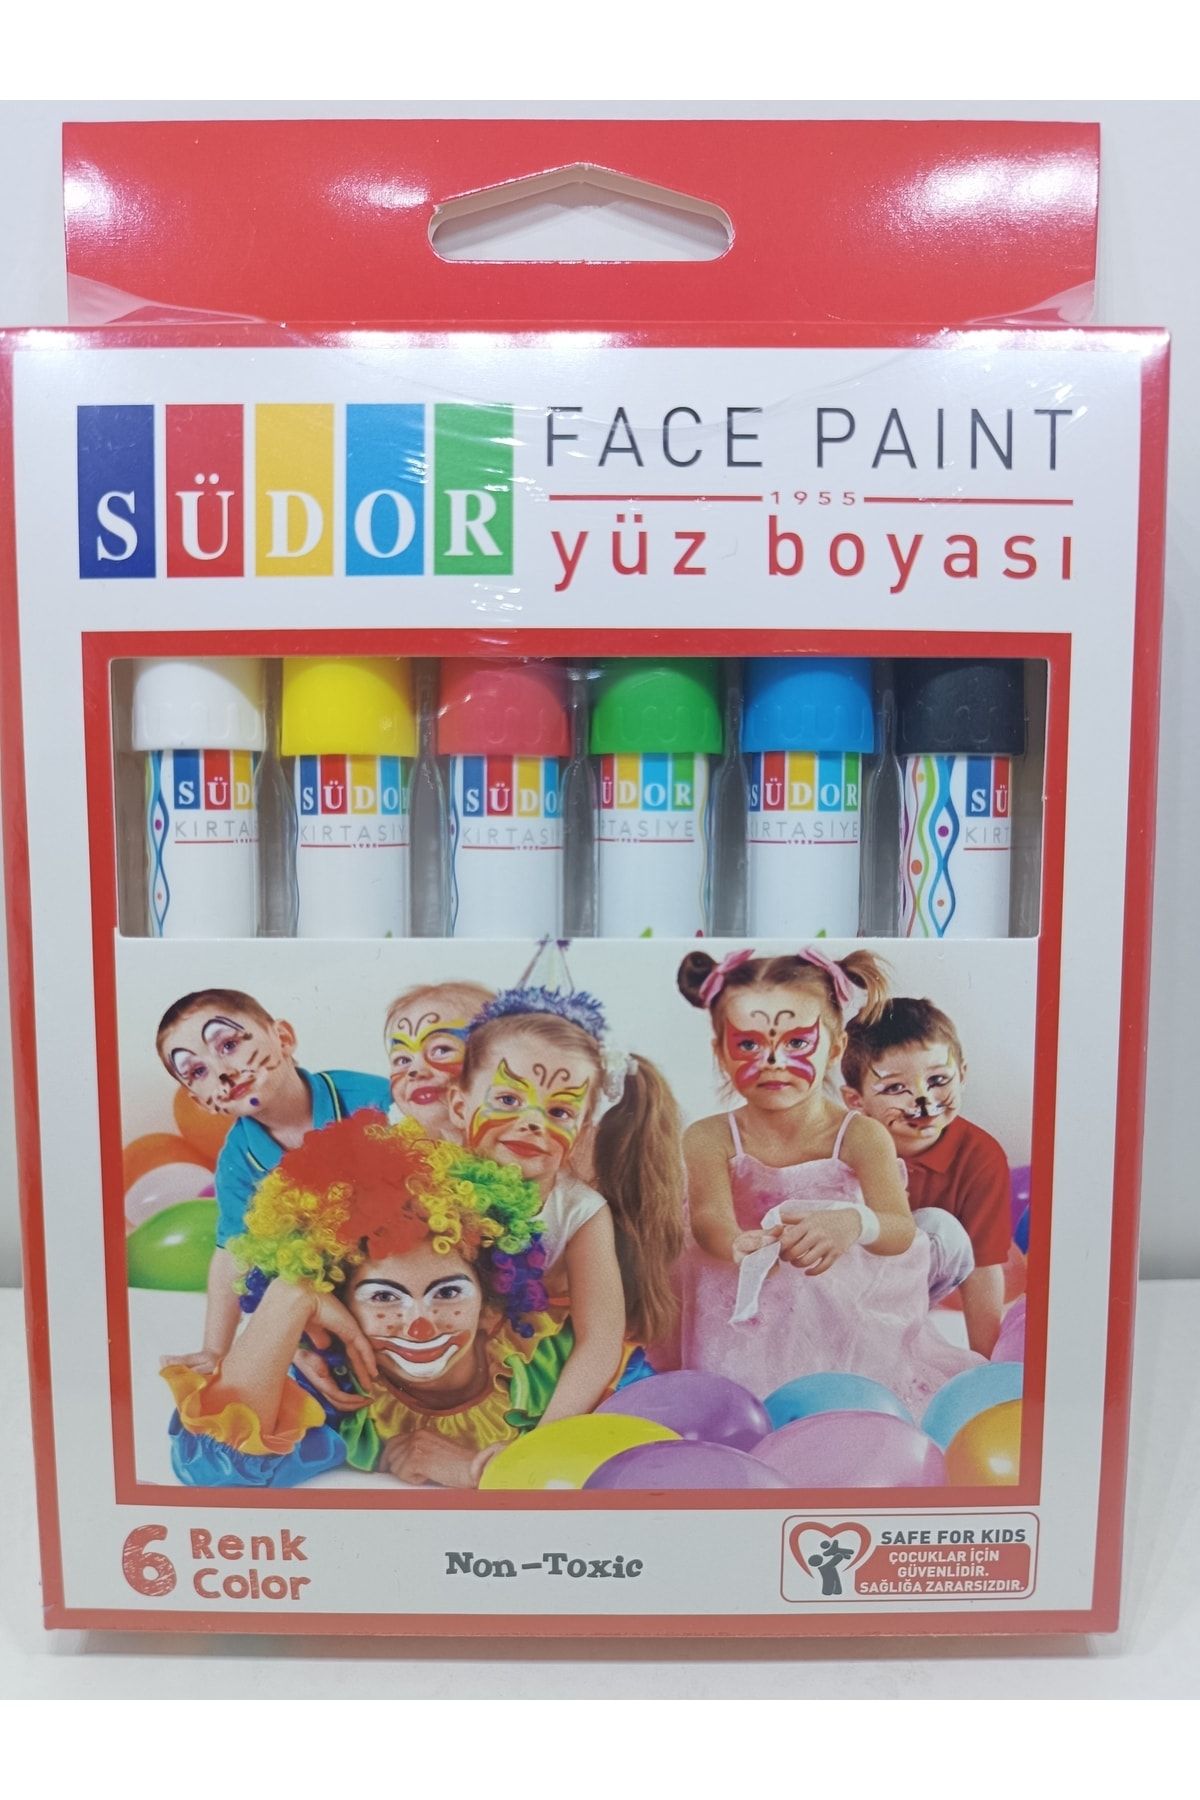 Südor Yüz Boyası / Yüz Boyama Kalemi / Palyaço Kalemi - 6 Renk